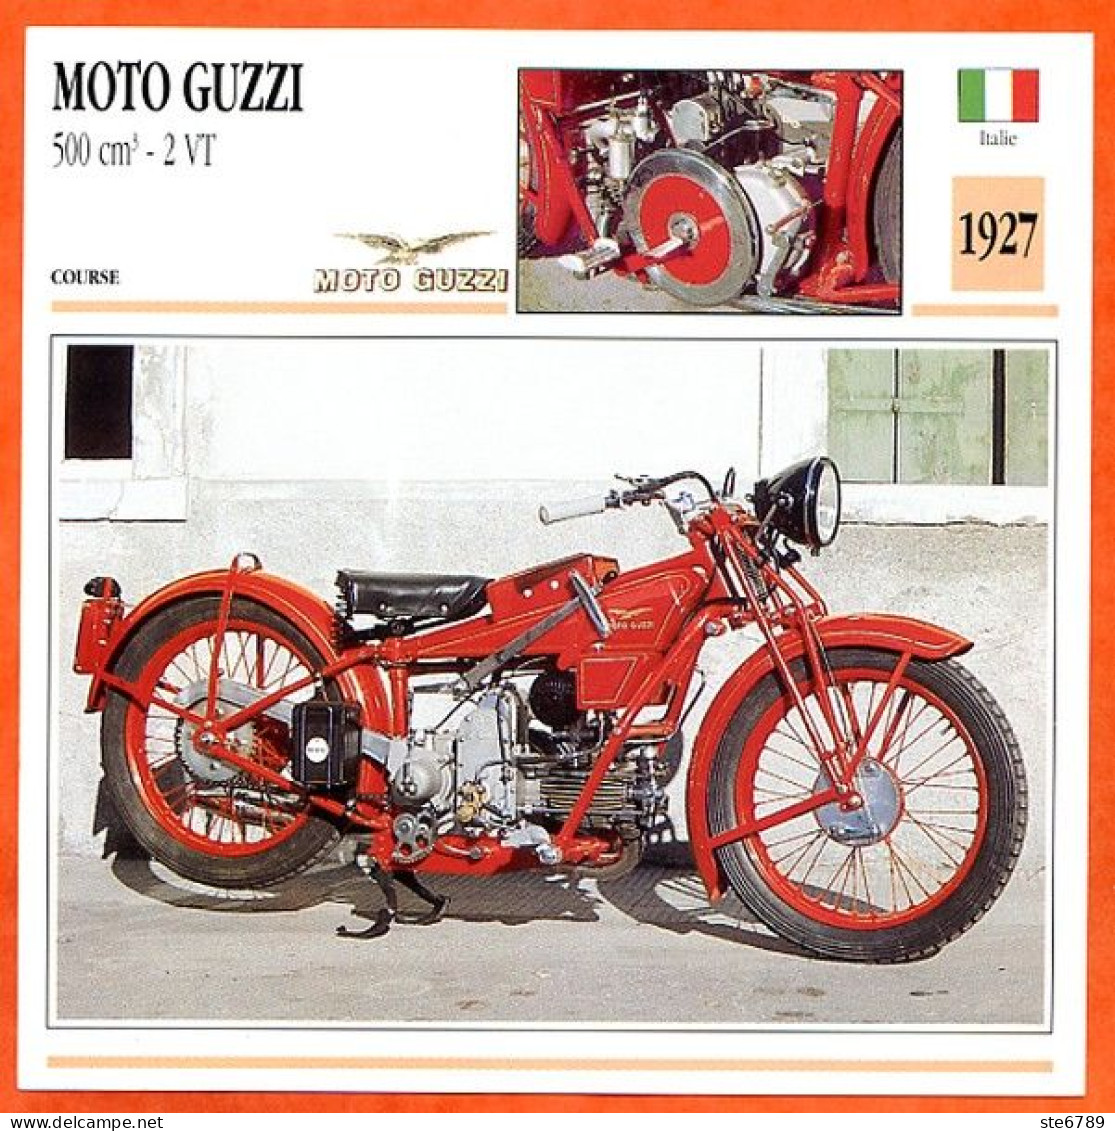 MOTO GUZZI 500 2 VT 1927 Italie Fiche Technique Moto - Sports